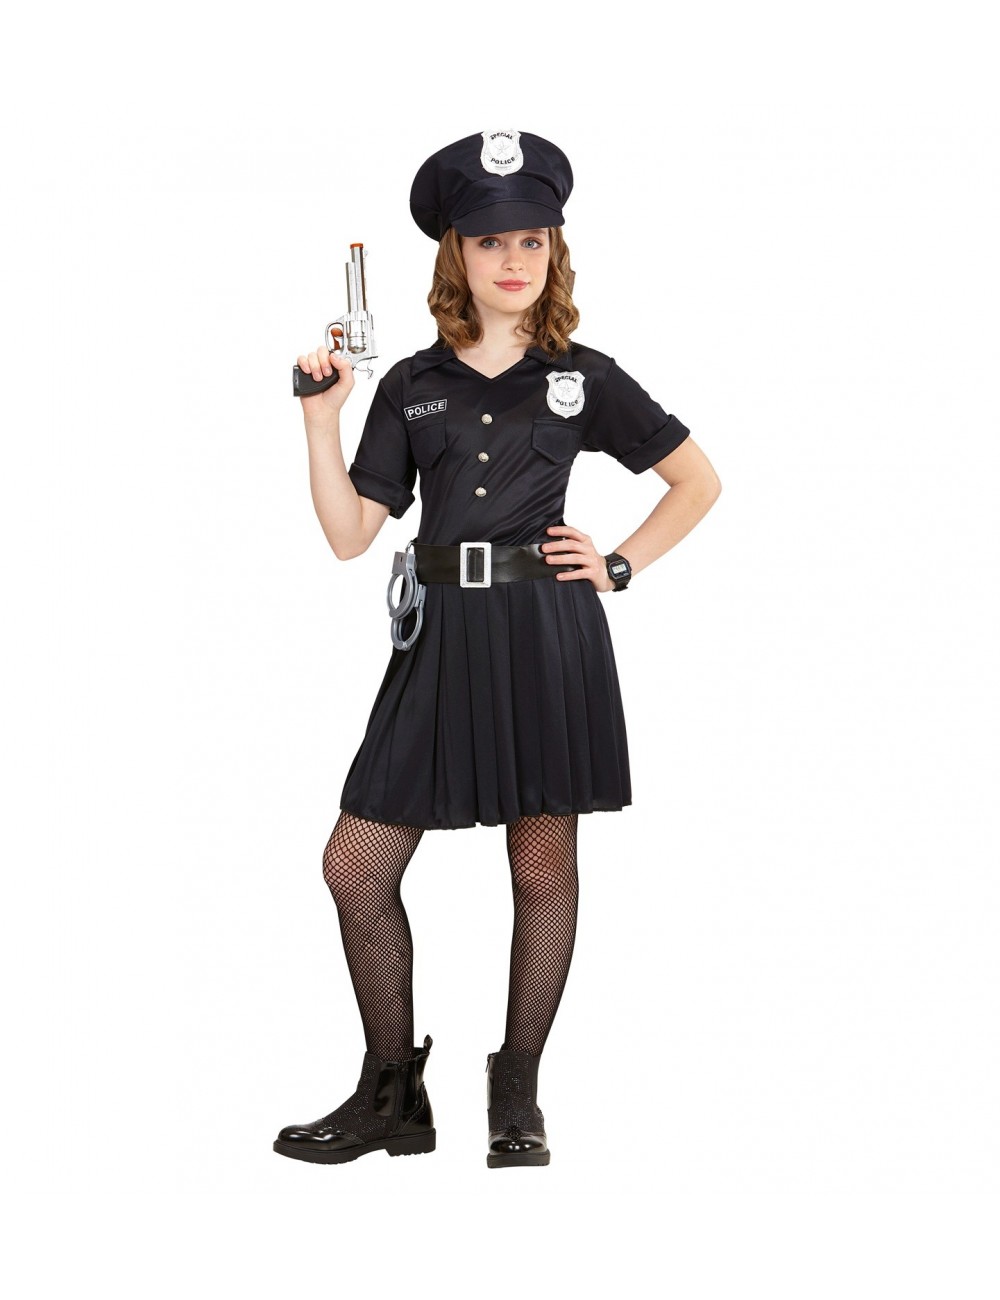 Deguisement Policier Enfant Costume de Police Ensemble pour Enfant